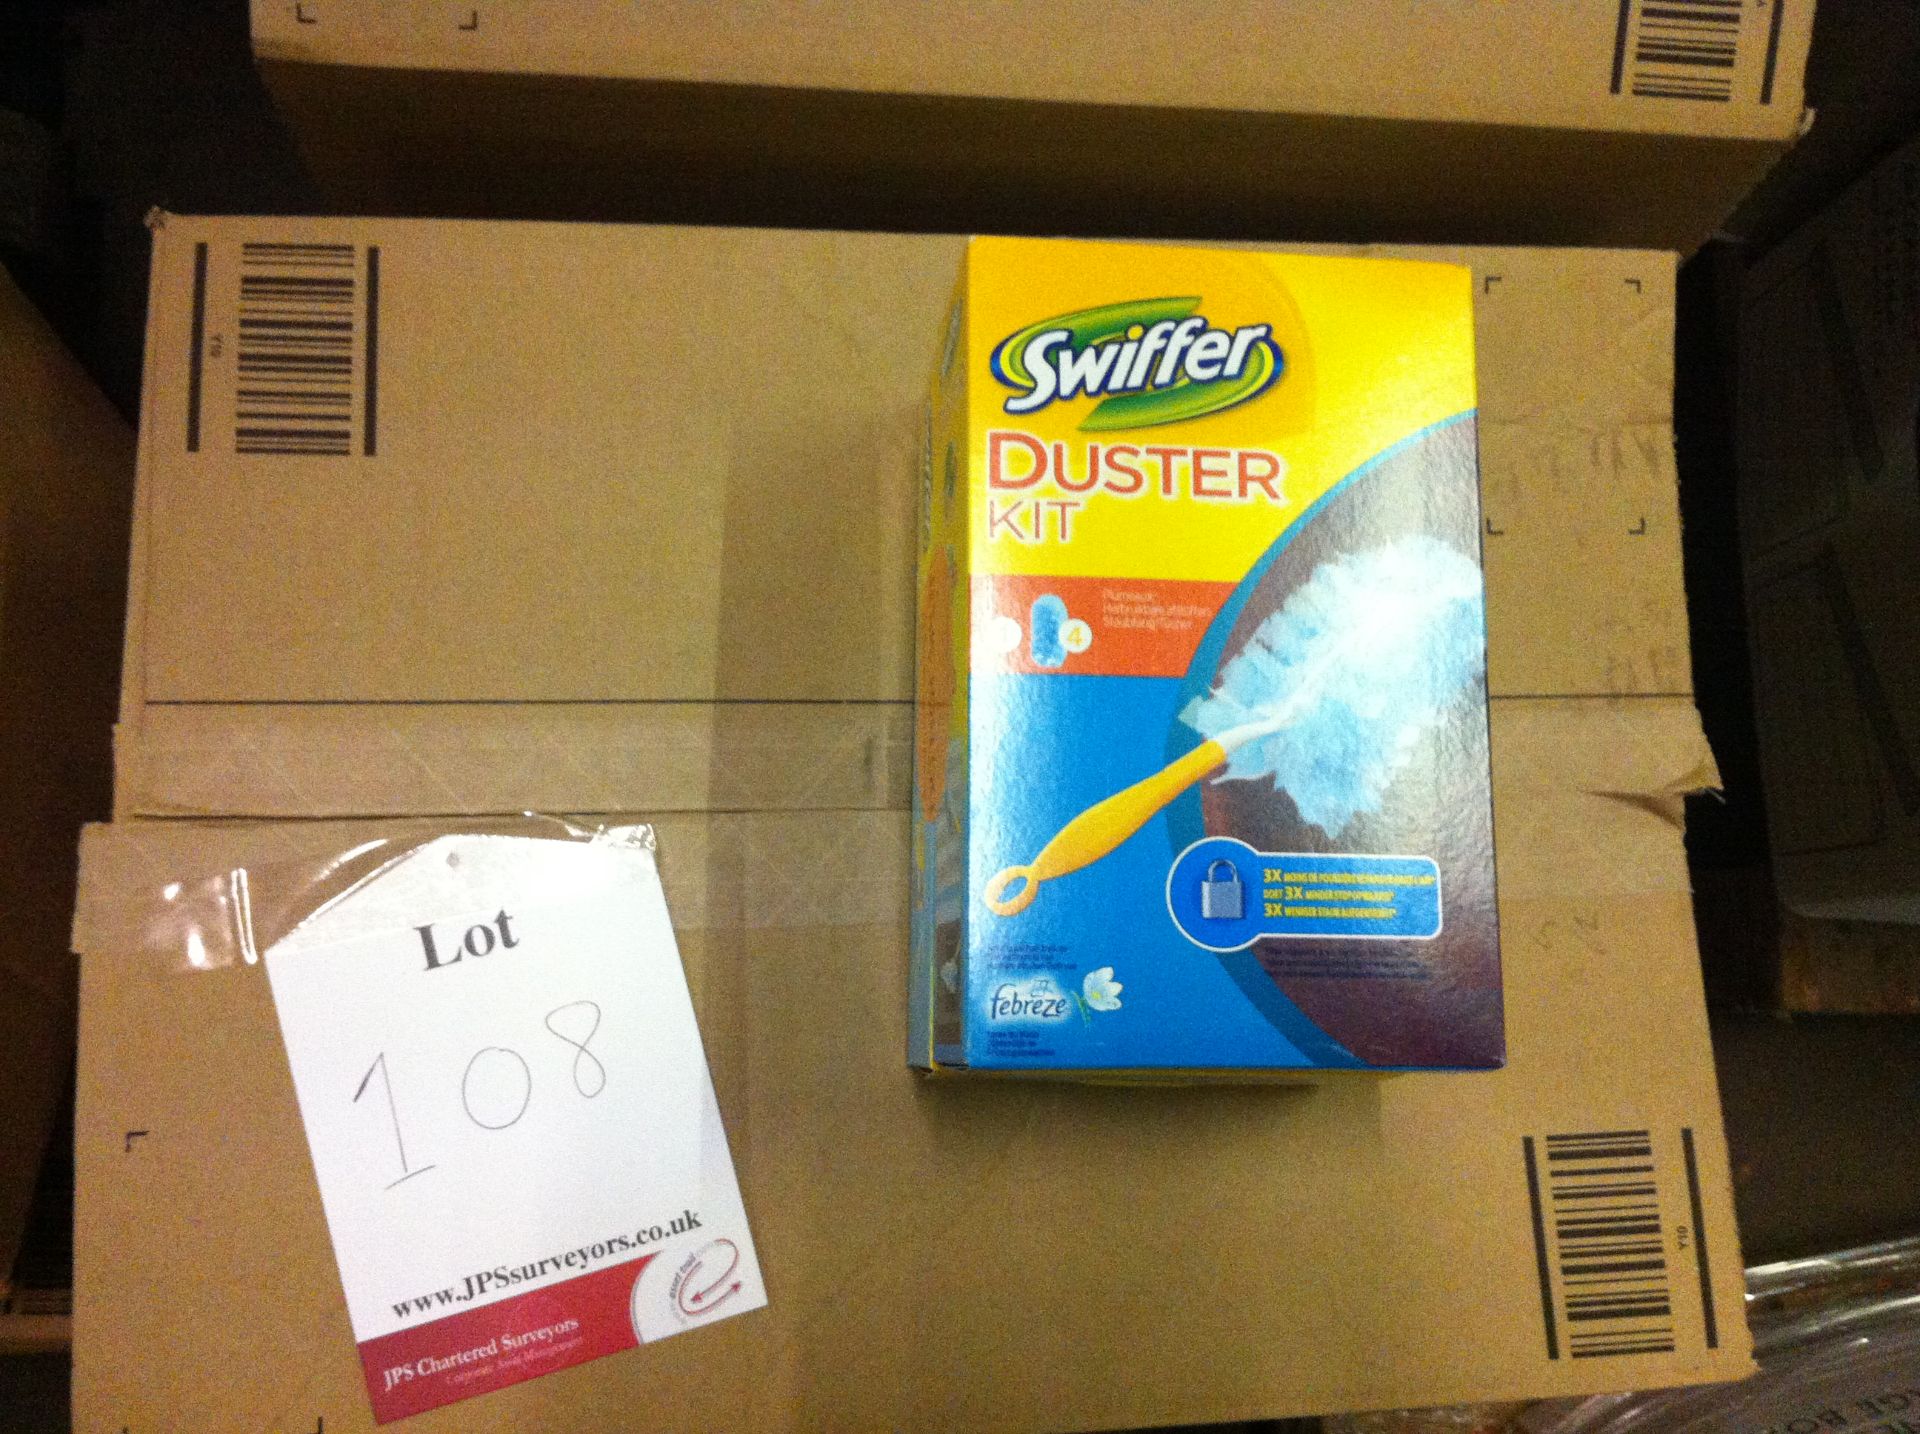 78 Swifter Duster Kits